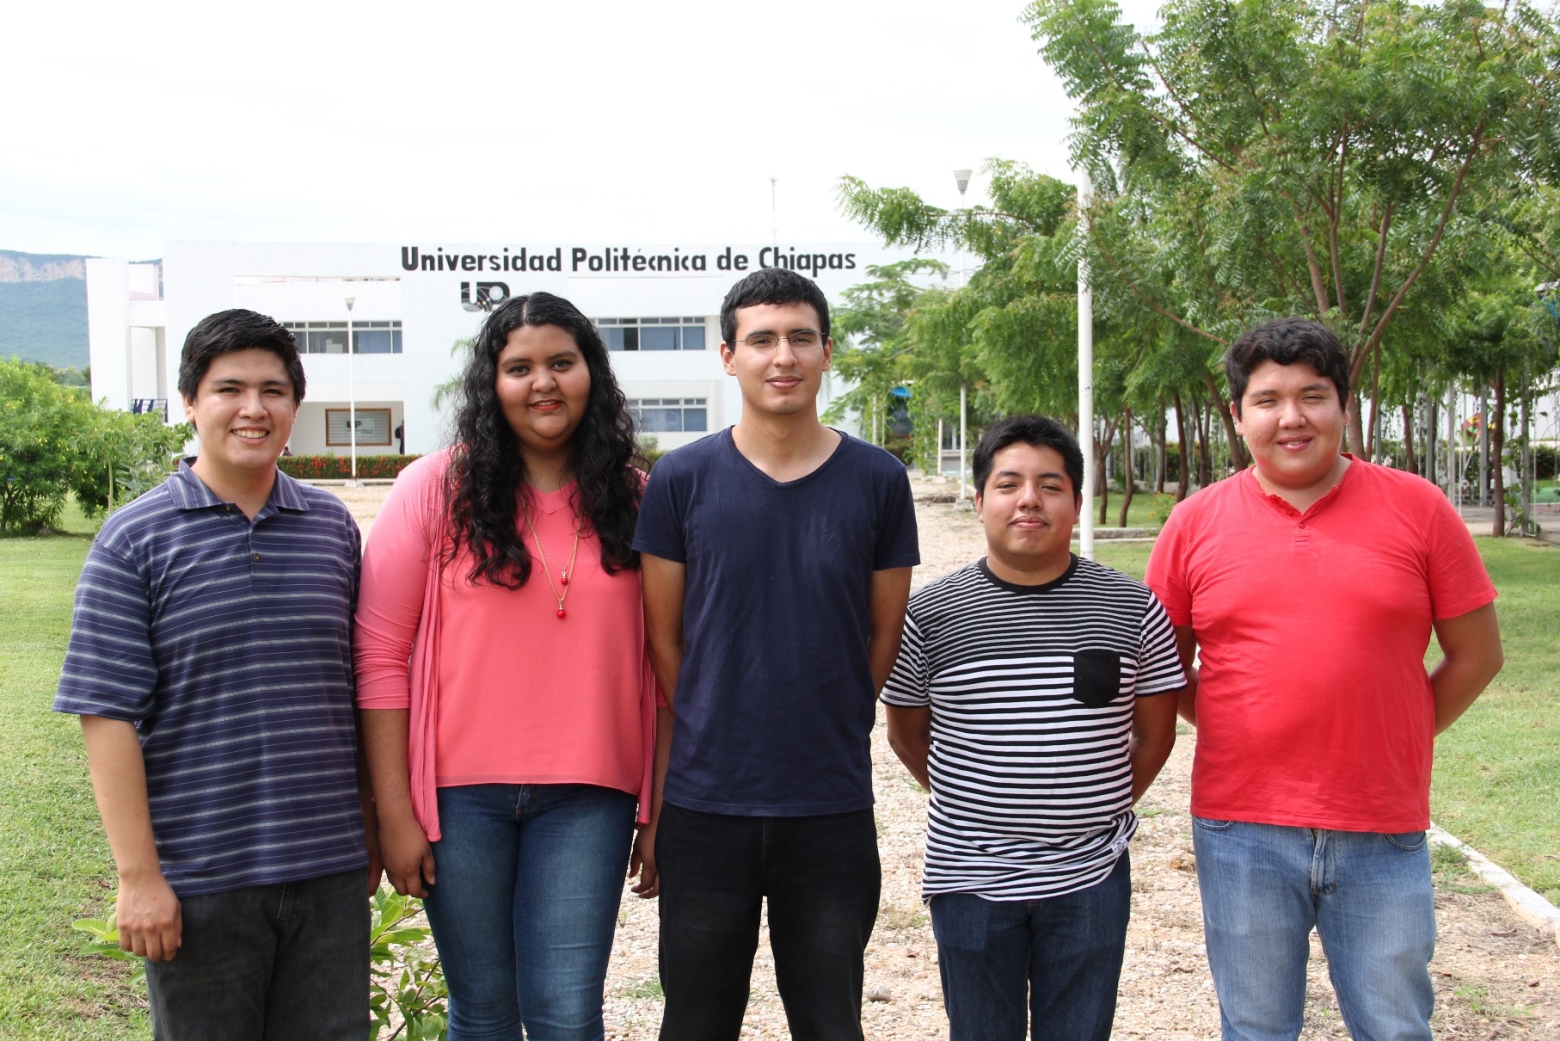 Estudiantes de la Politécnica de Chiapas participarán en proyectos internacionales